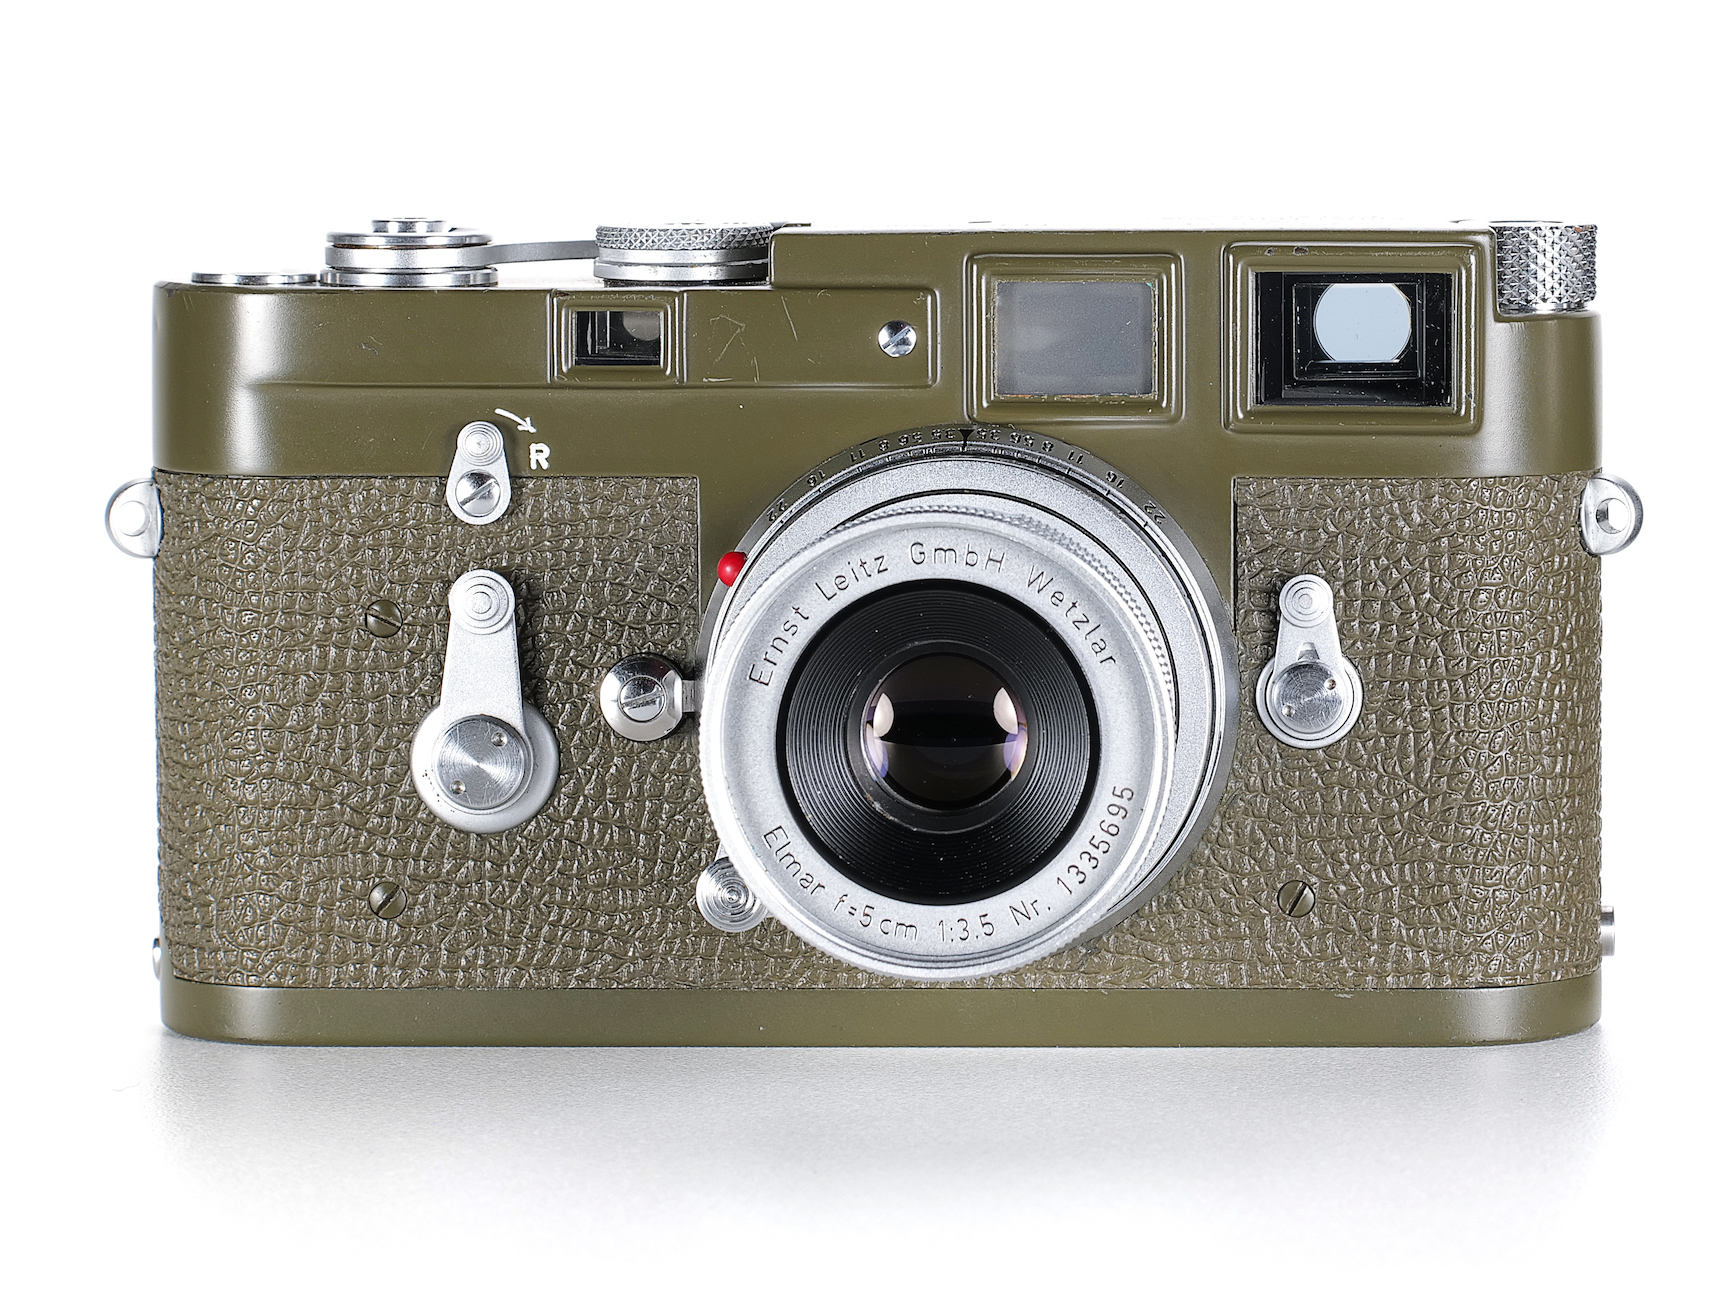 The Different Leica M3 Olive Bundeseigentum Cameras - Jo Geier